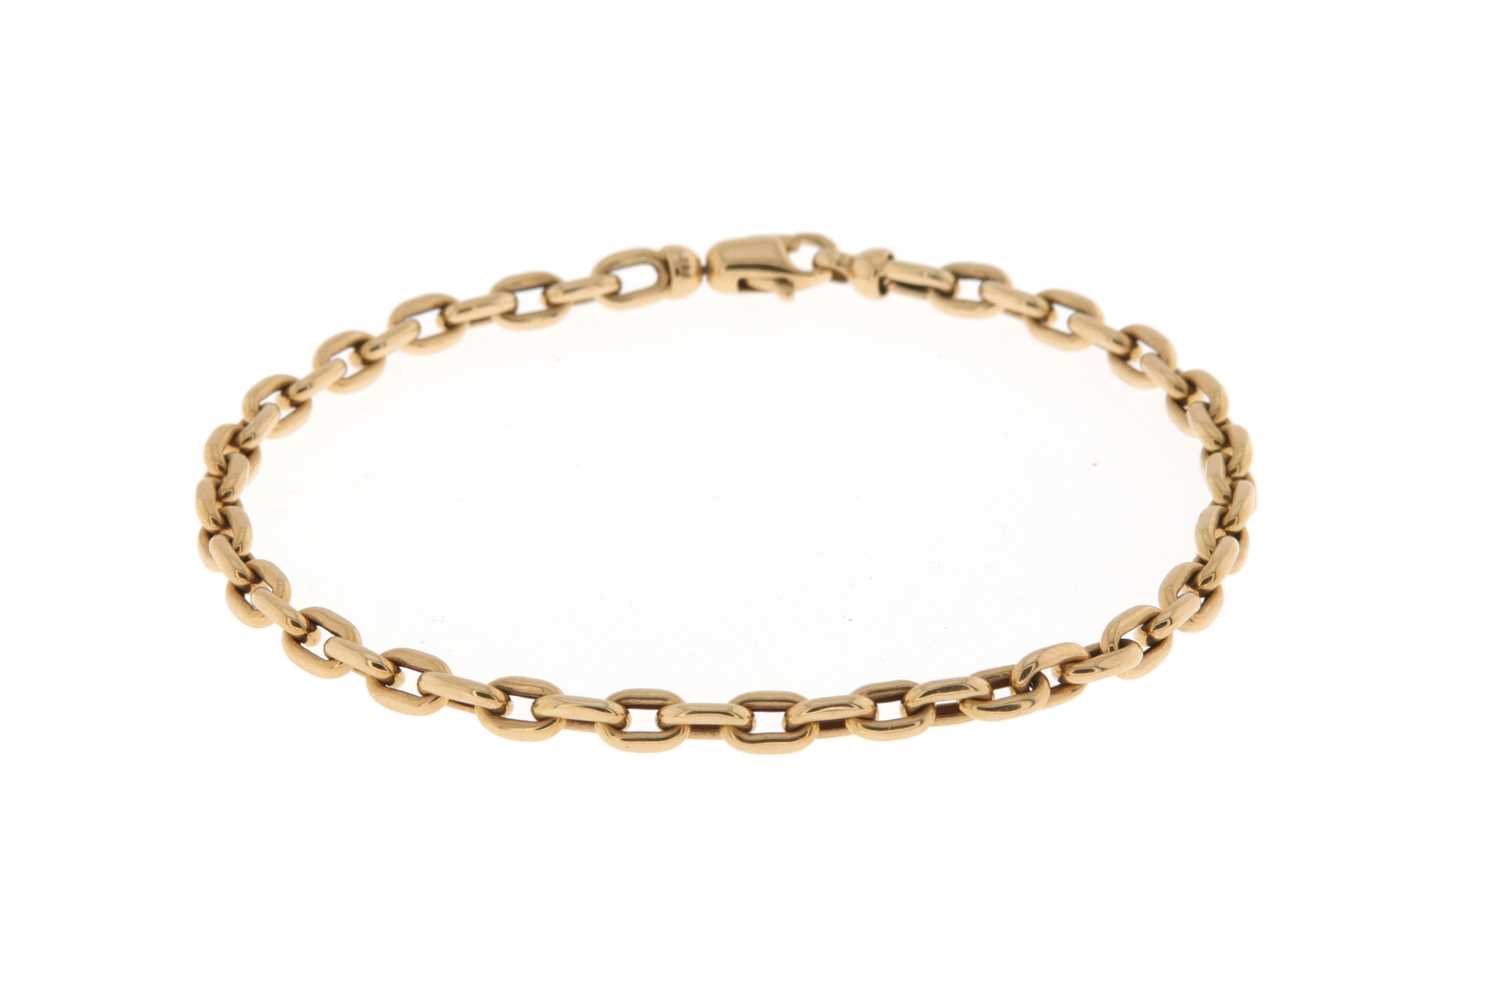 Lot 684 - Gold link Bracelet